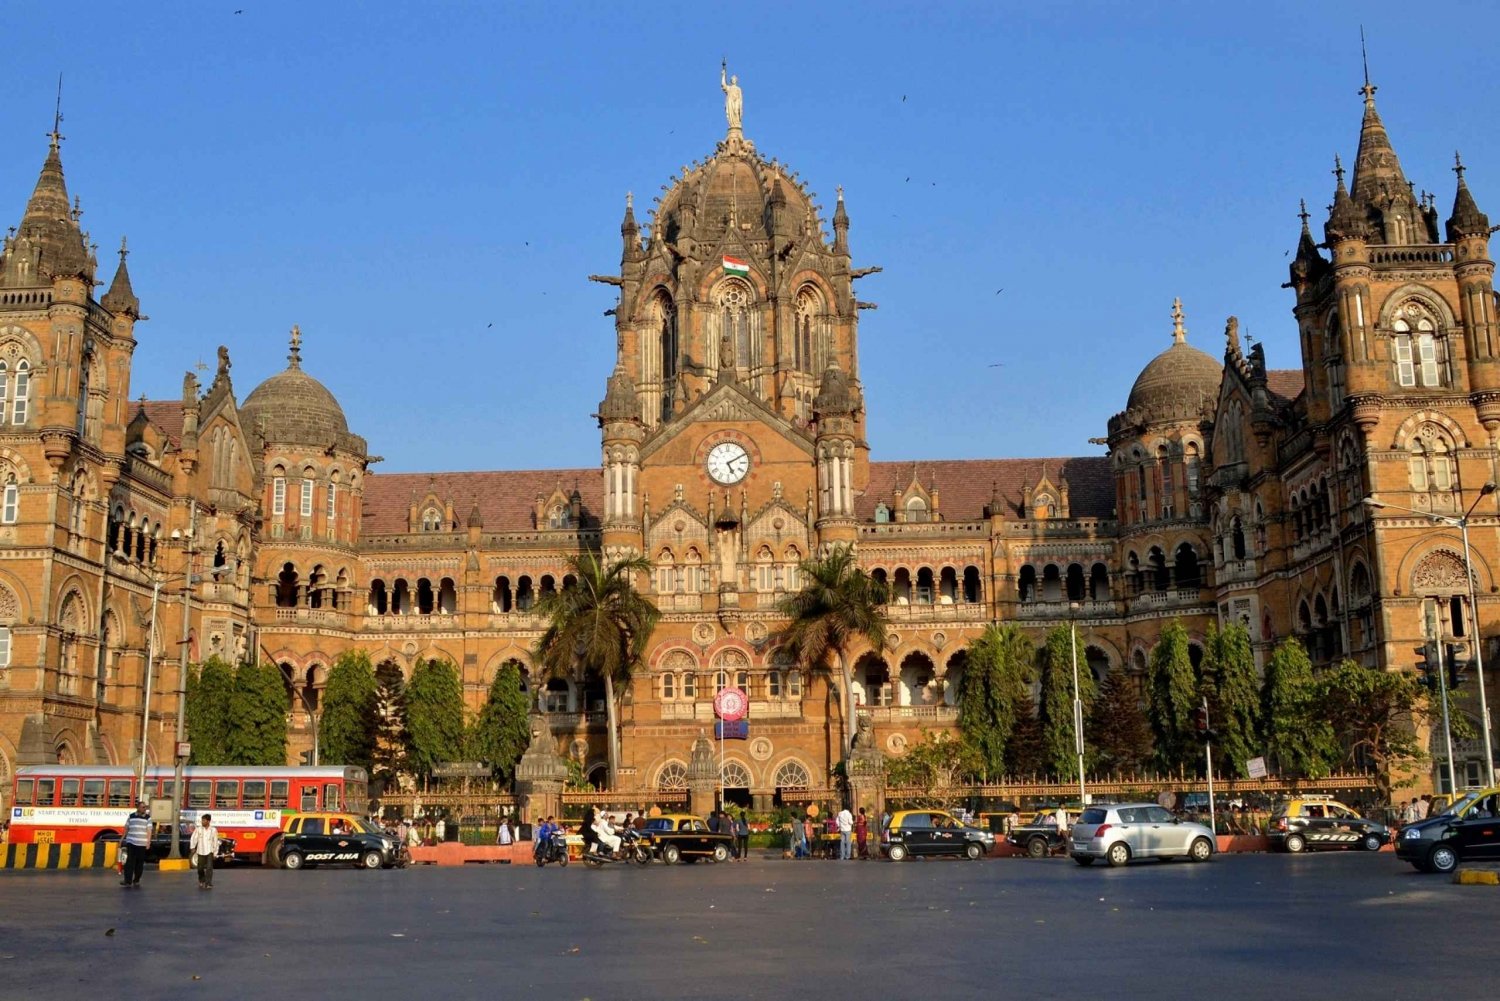 Private Stadtrundfahrt durch Mumbai mit Abholung und Rückgabe